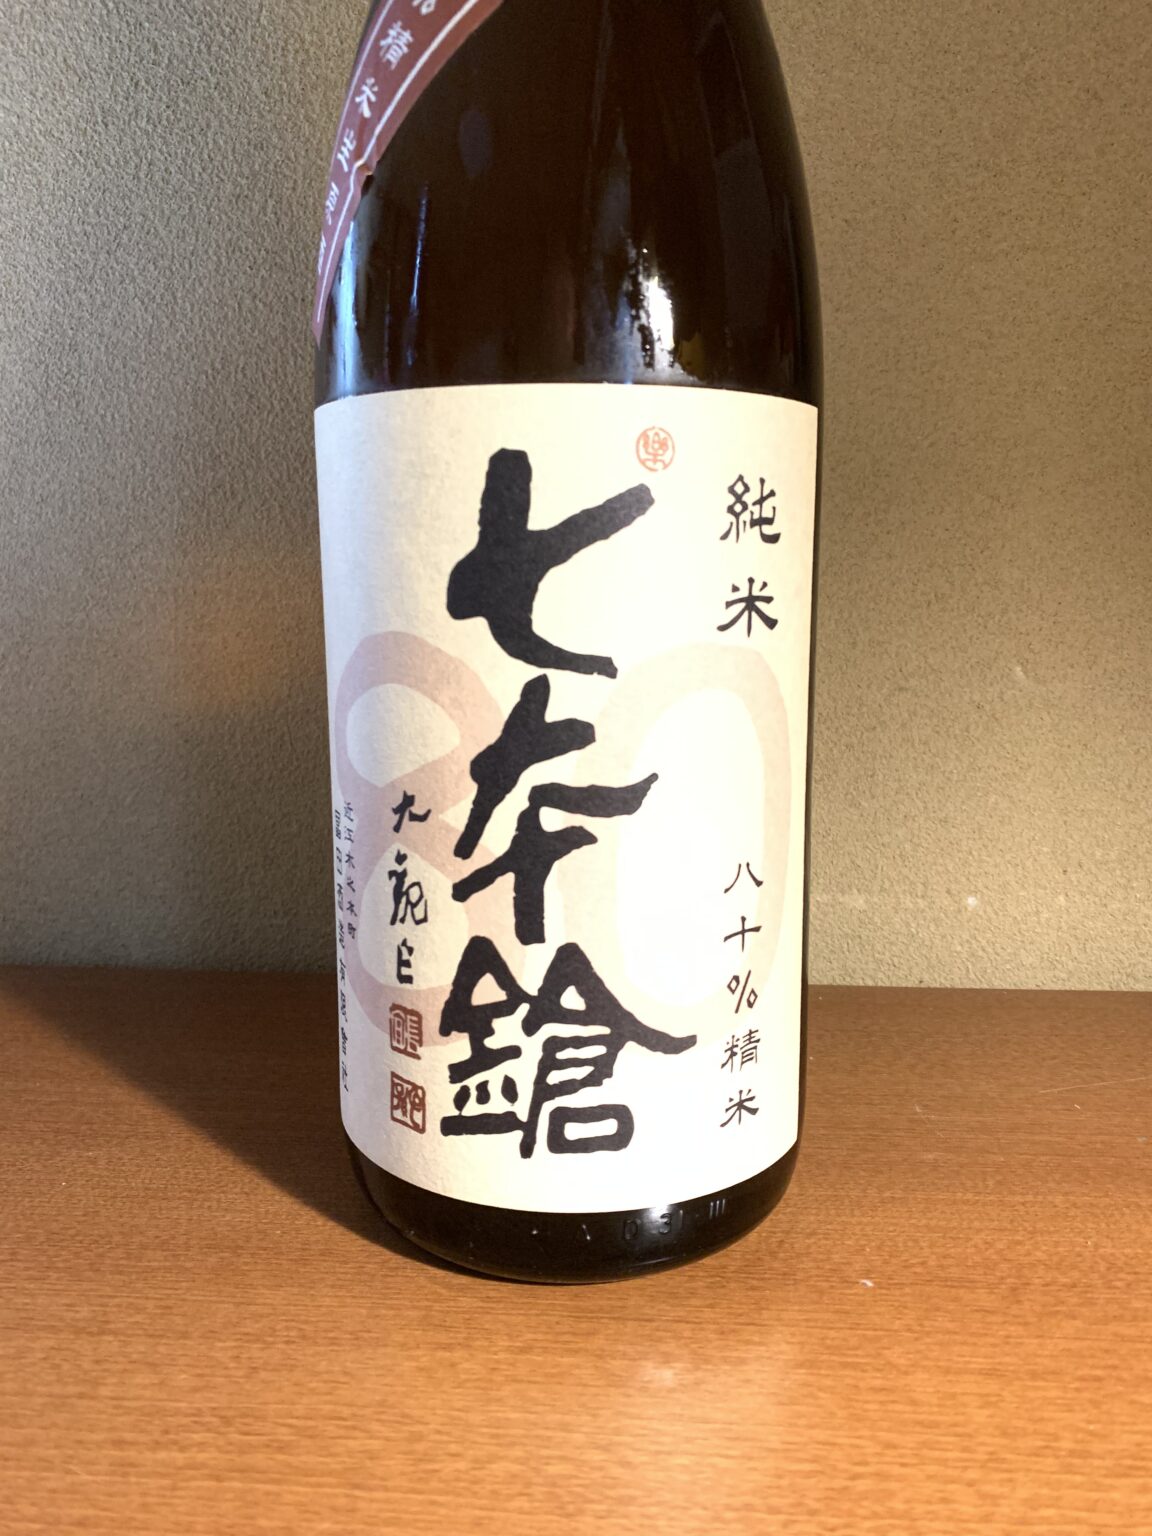 滋賀の日本酒『七本鎗 低精白純米生』は旨味の余韻が素晴らしい